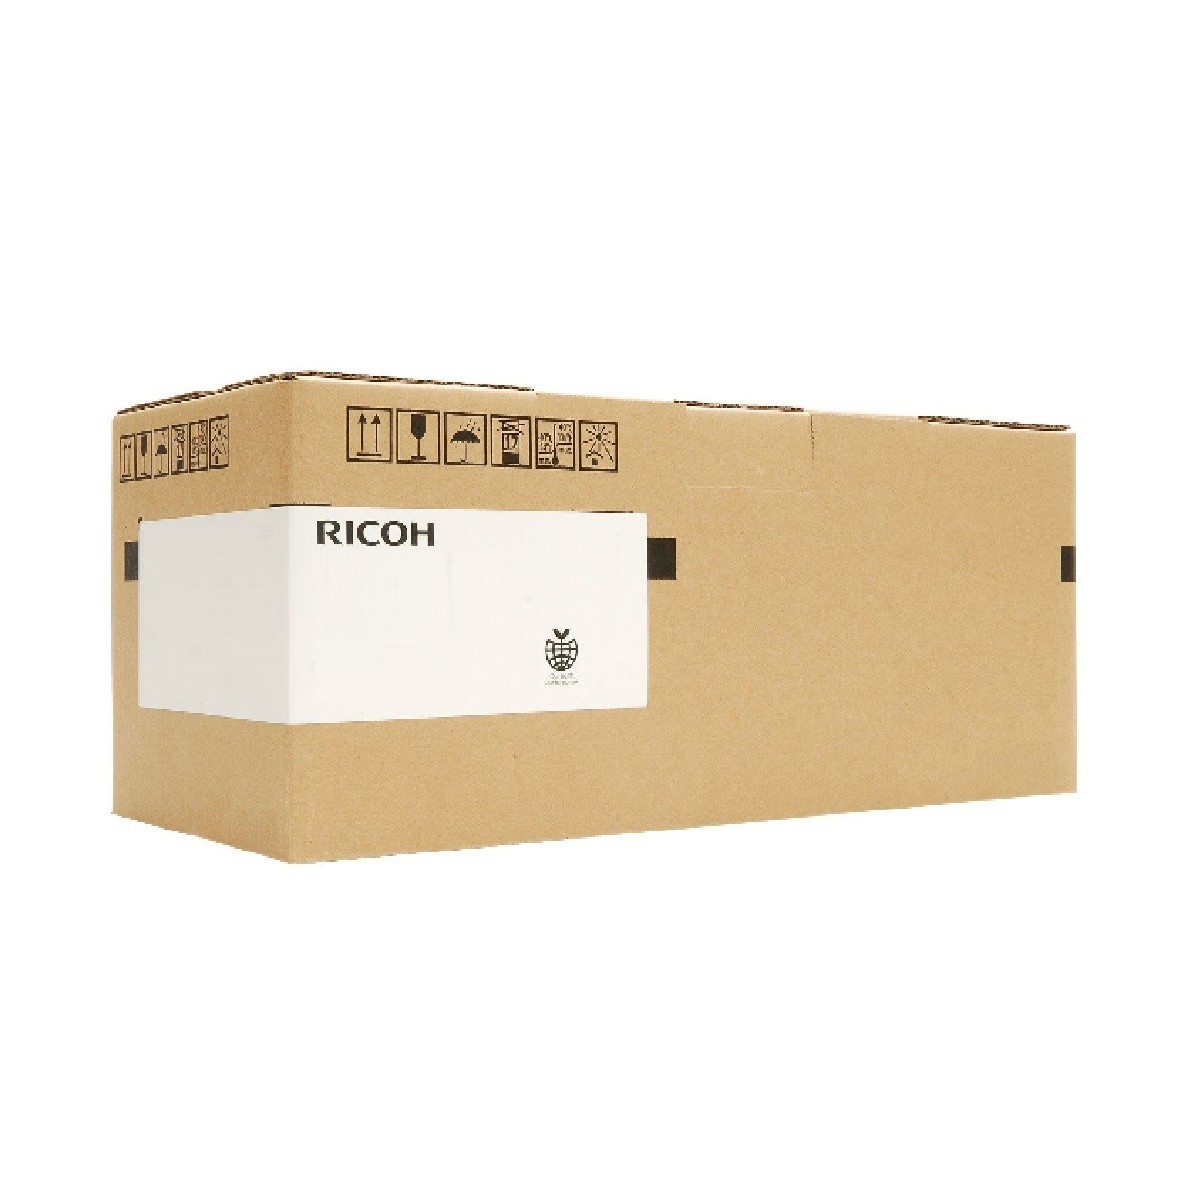 Ricoh D0749510 - Original - Ricoh - Pro C-751EX Pro C651EX Pro C751 - 1 pc(s) - 980000 pages